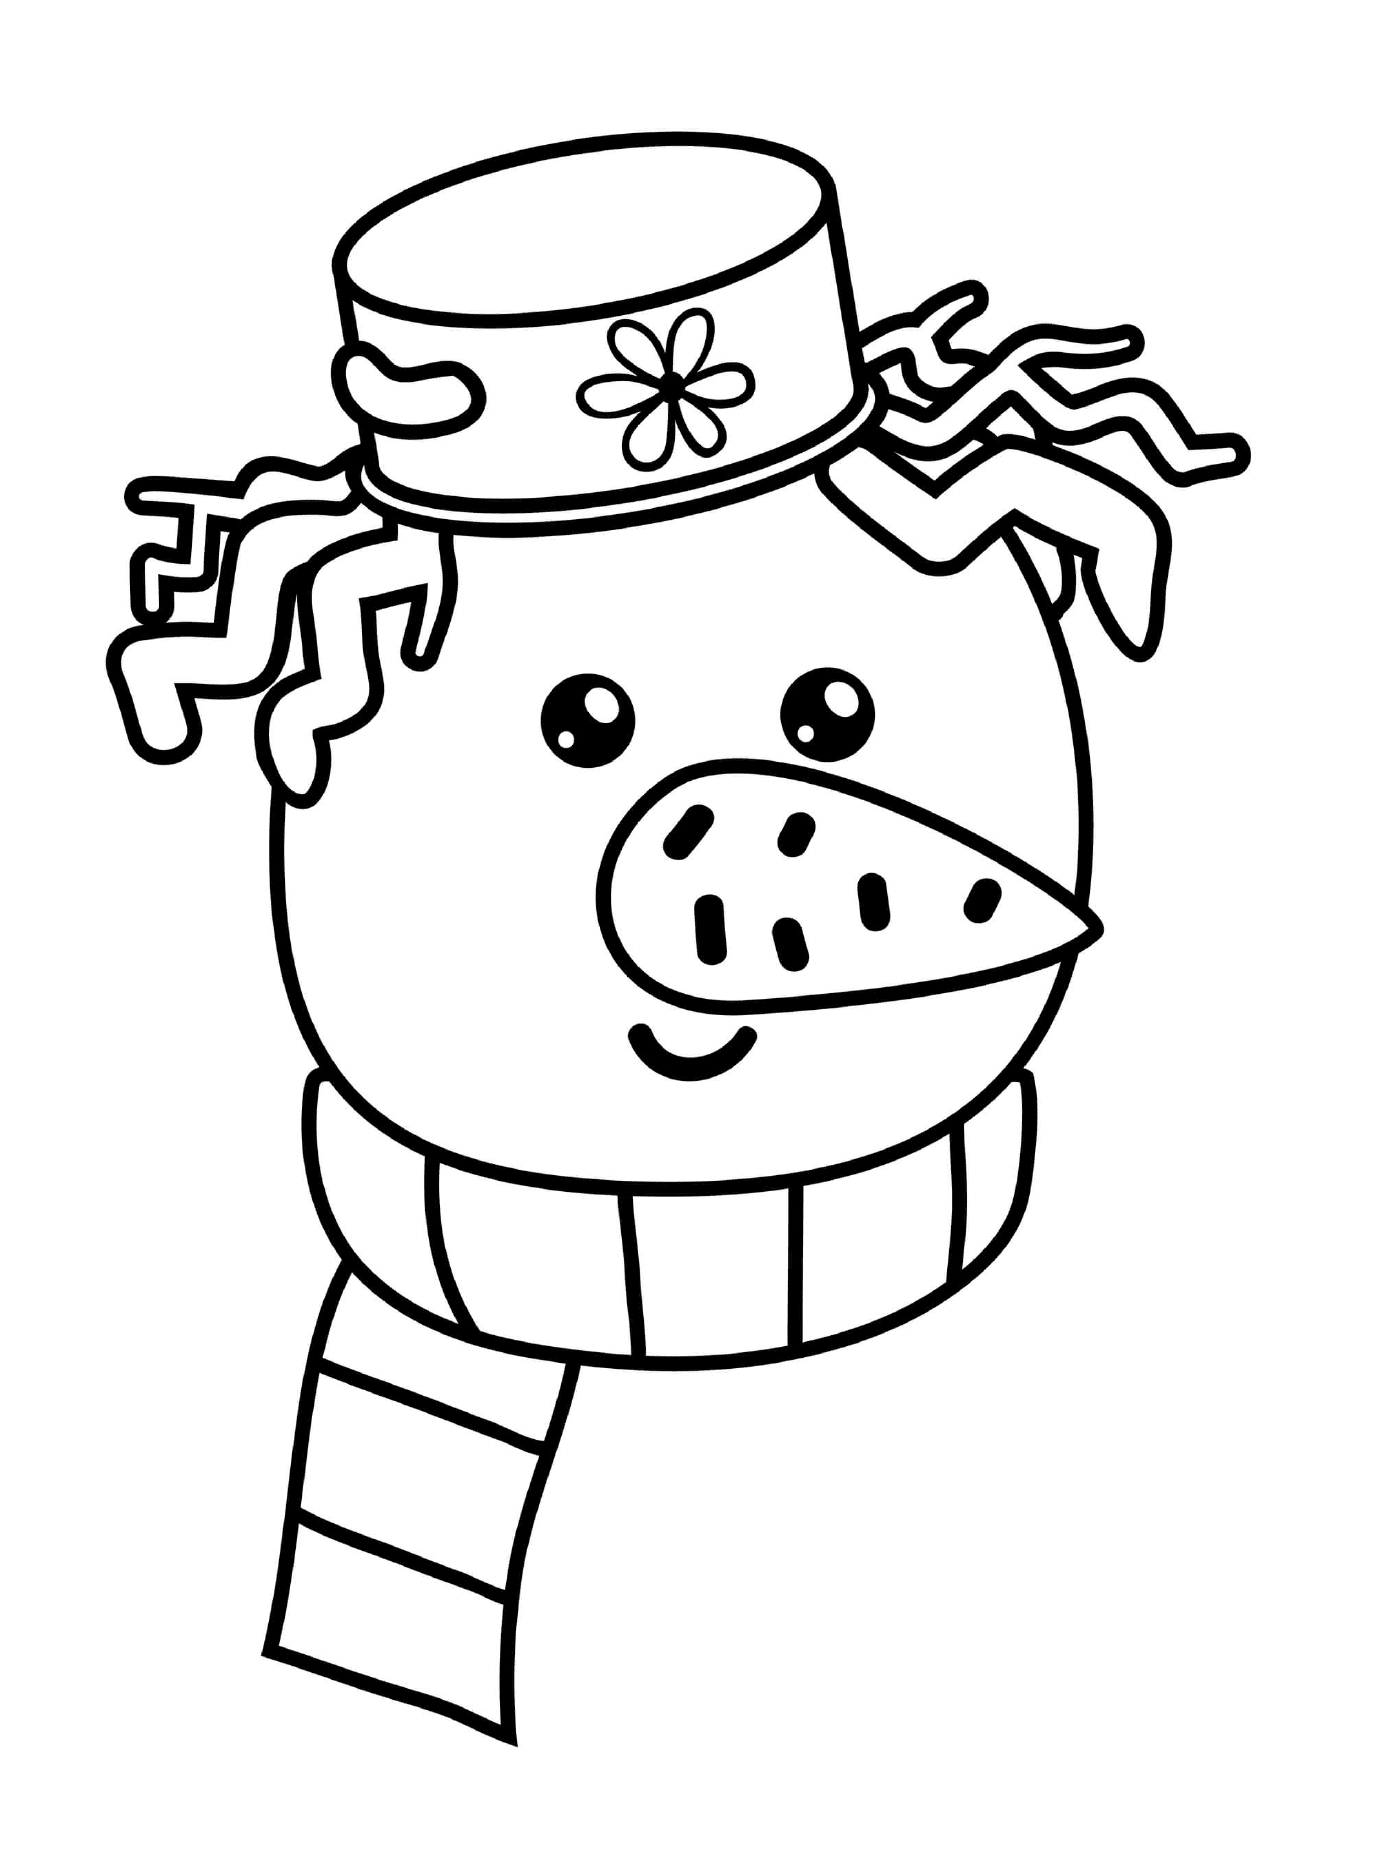  A cabeça de um boneco de neve com um chapéu e um lenço 